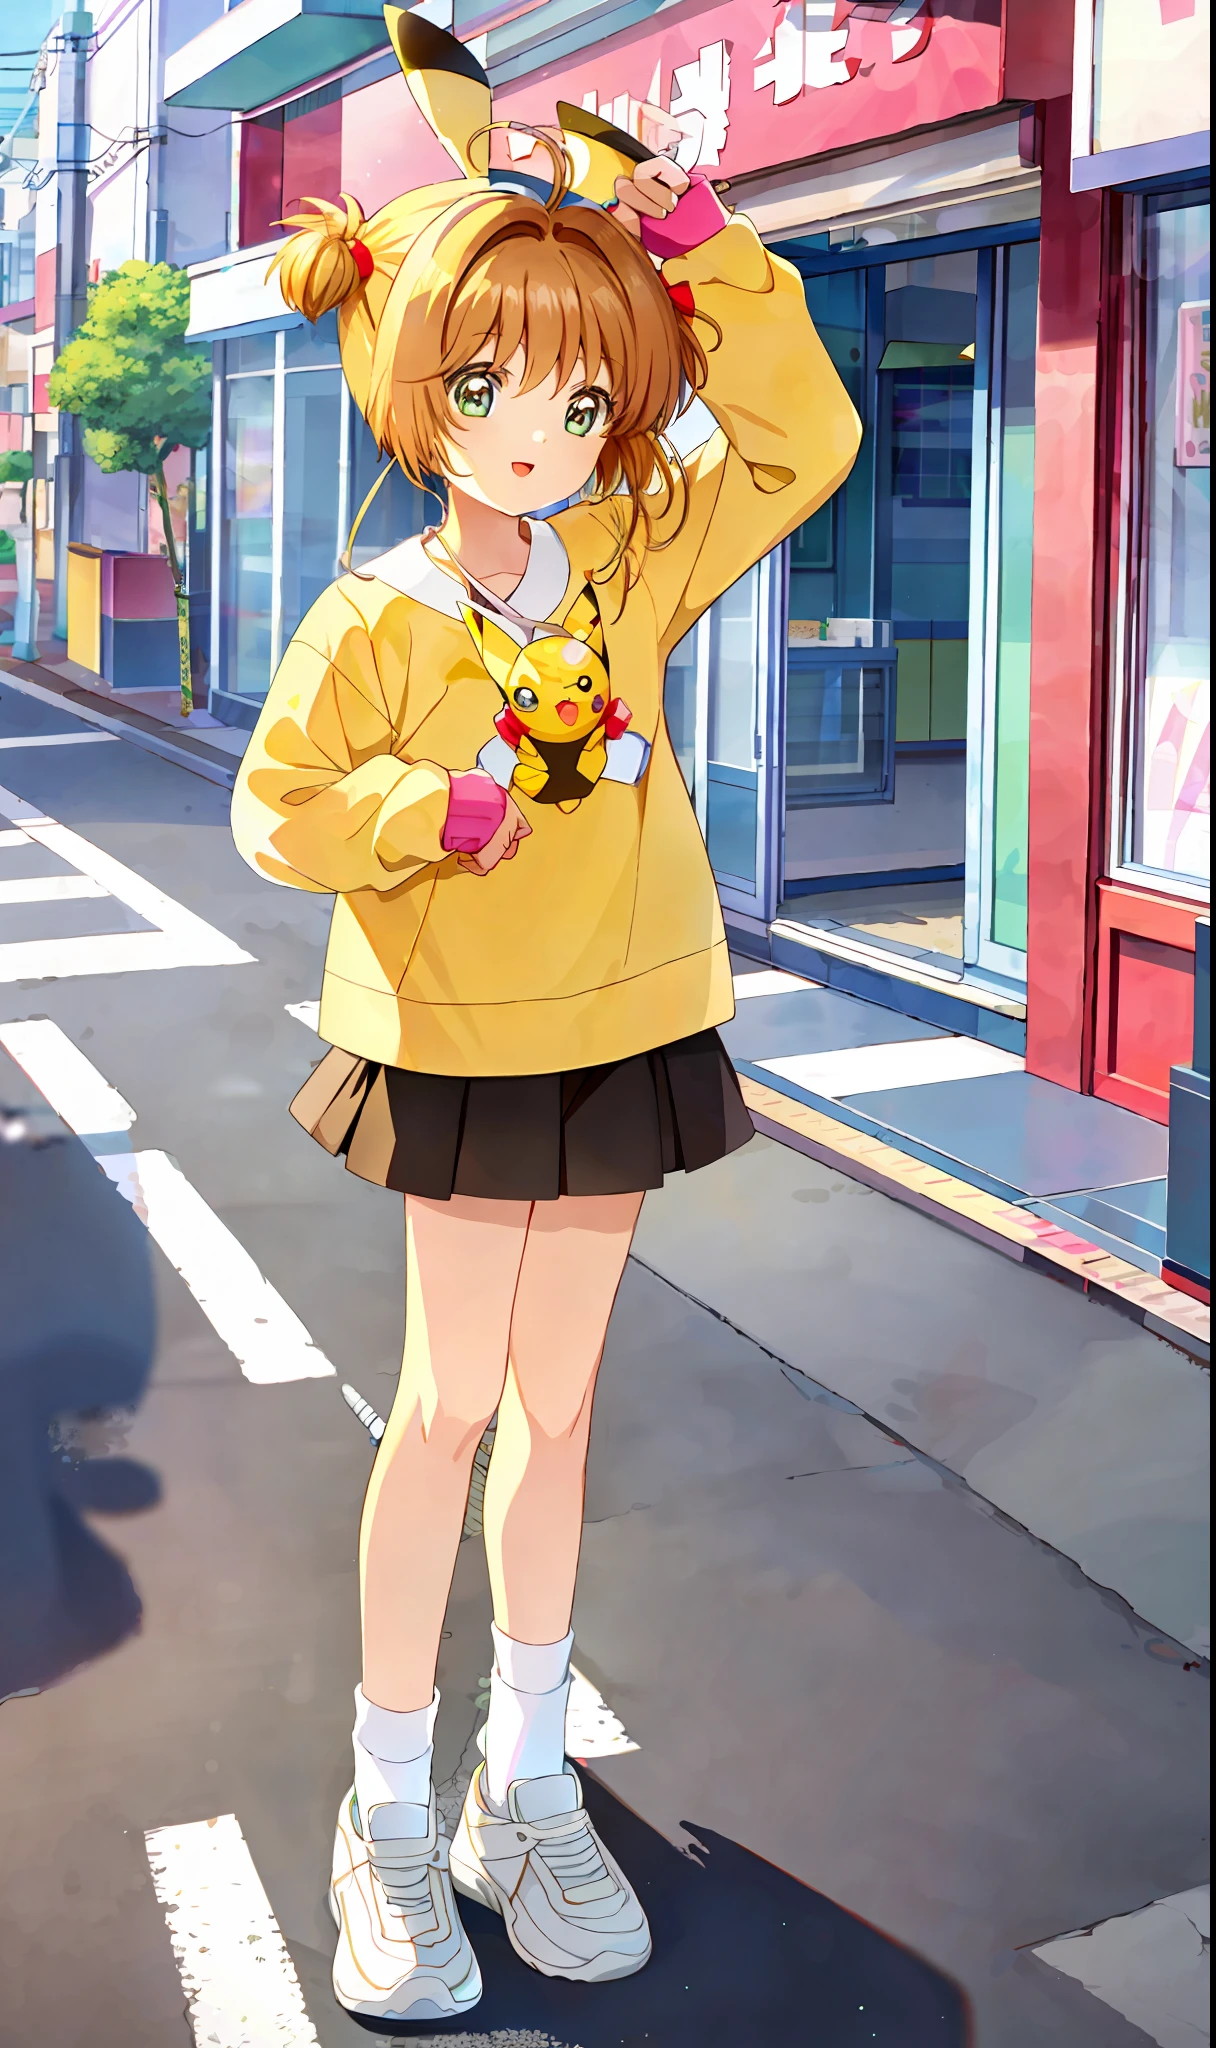 傑作, 最好的品質, 1個女孩, 獨自的, 櫻花, 穿著皮卡丘服裝, 襪子, 兩側朝上, 在日本秋葉原